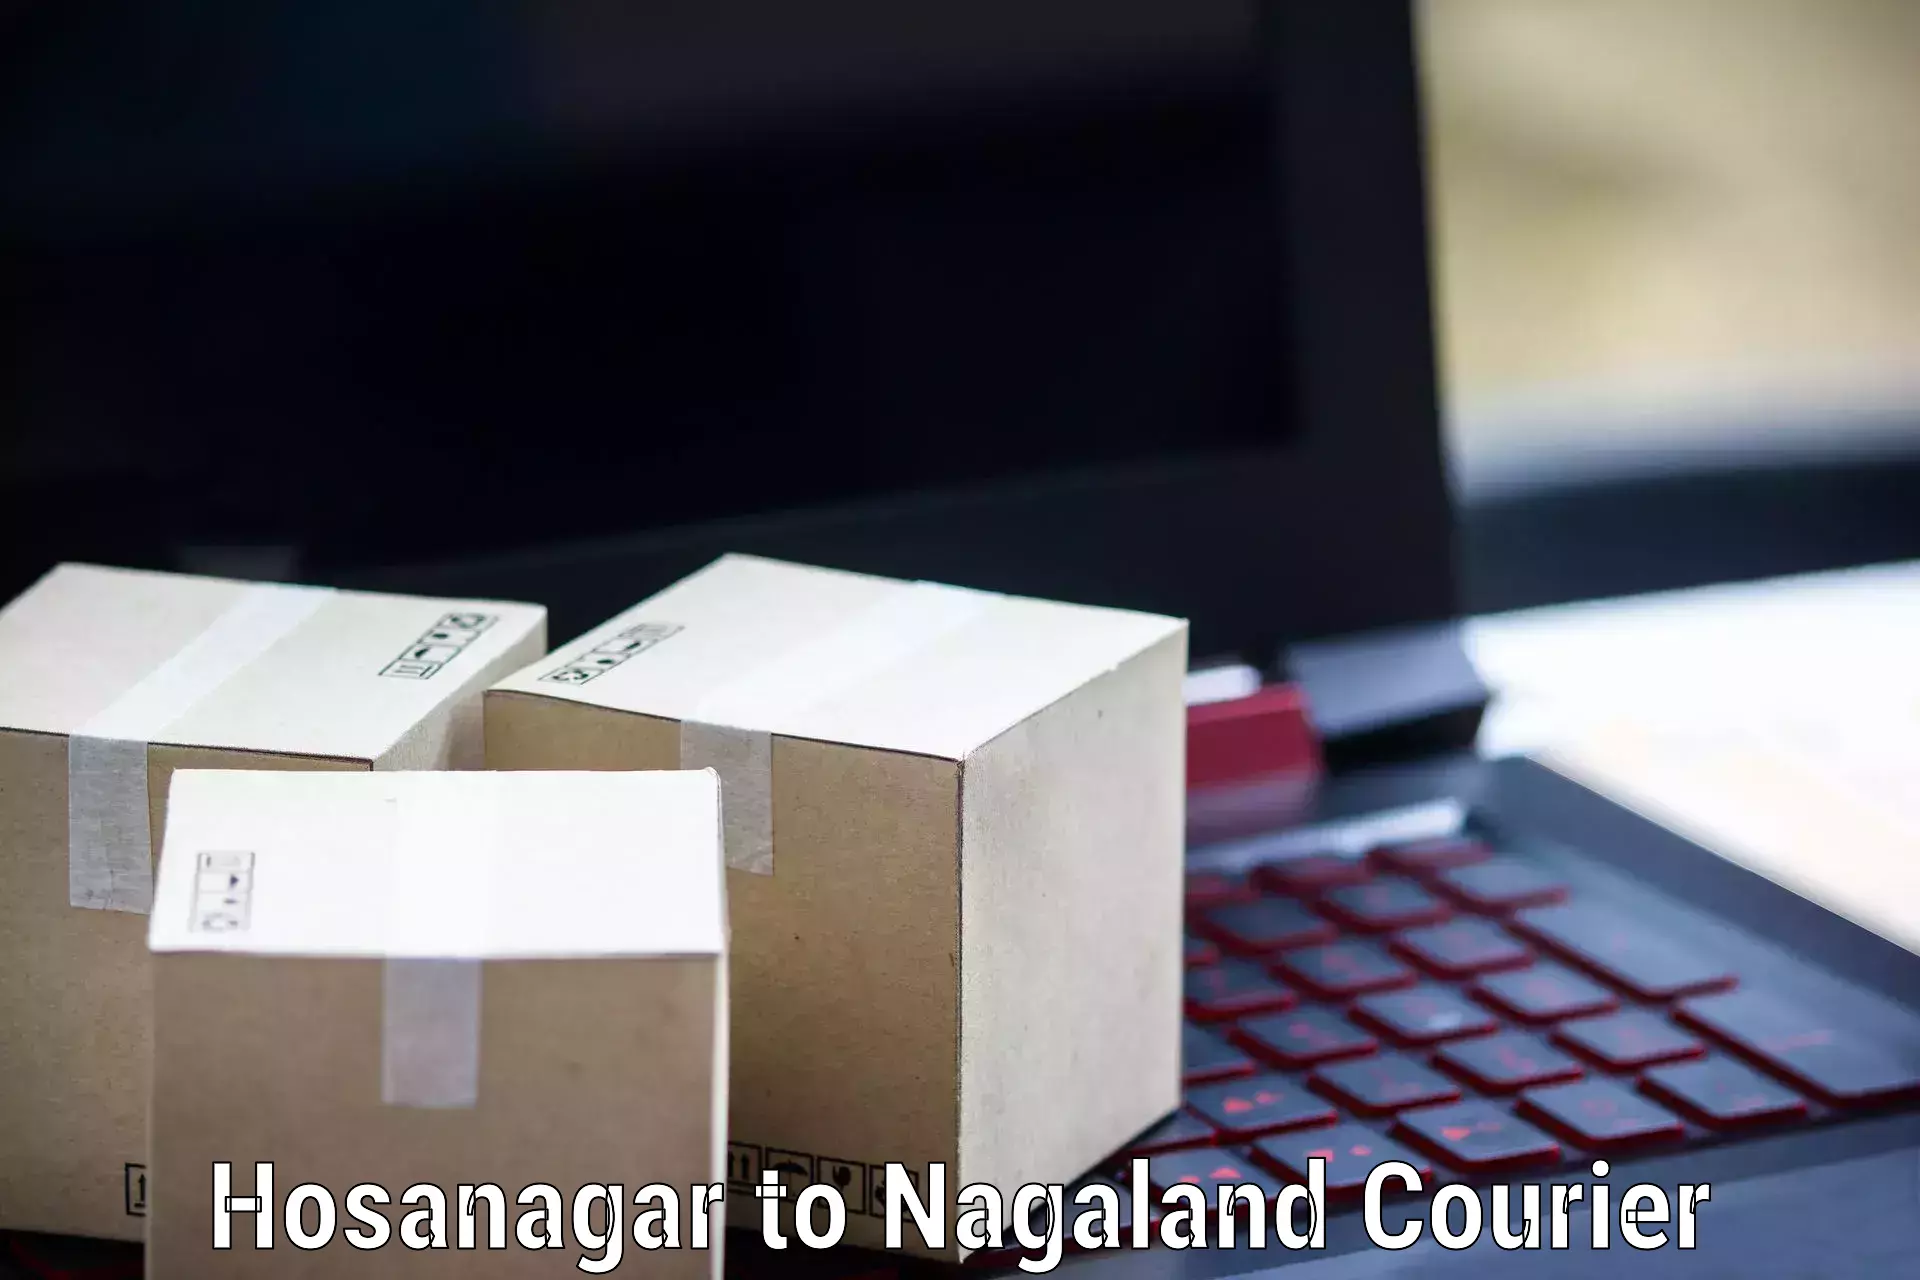 Next-generation courier services Hosanagar to Nagaland